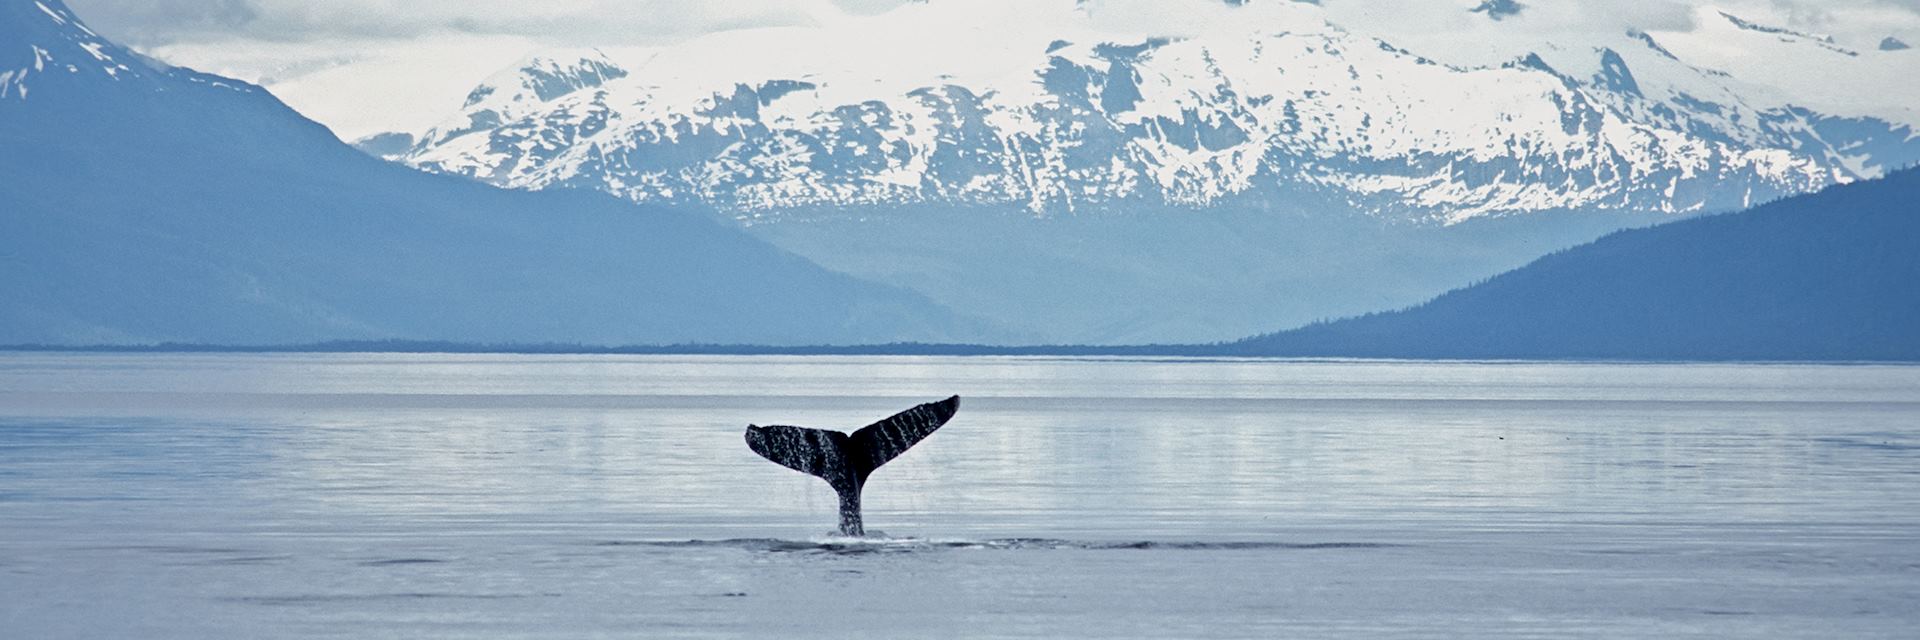 Whale, Alaska